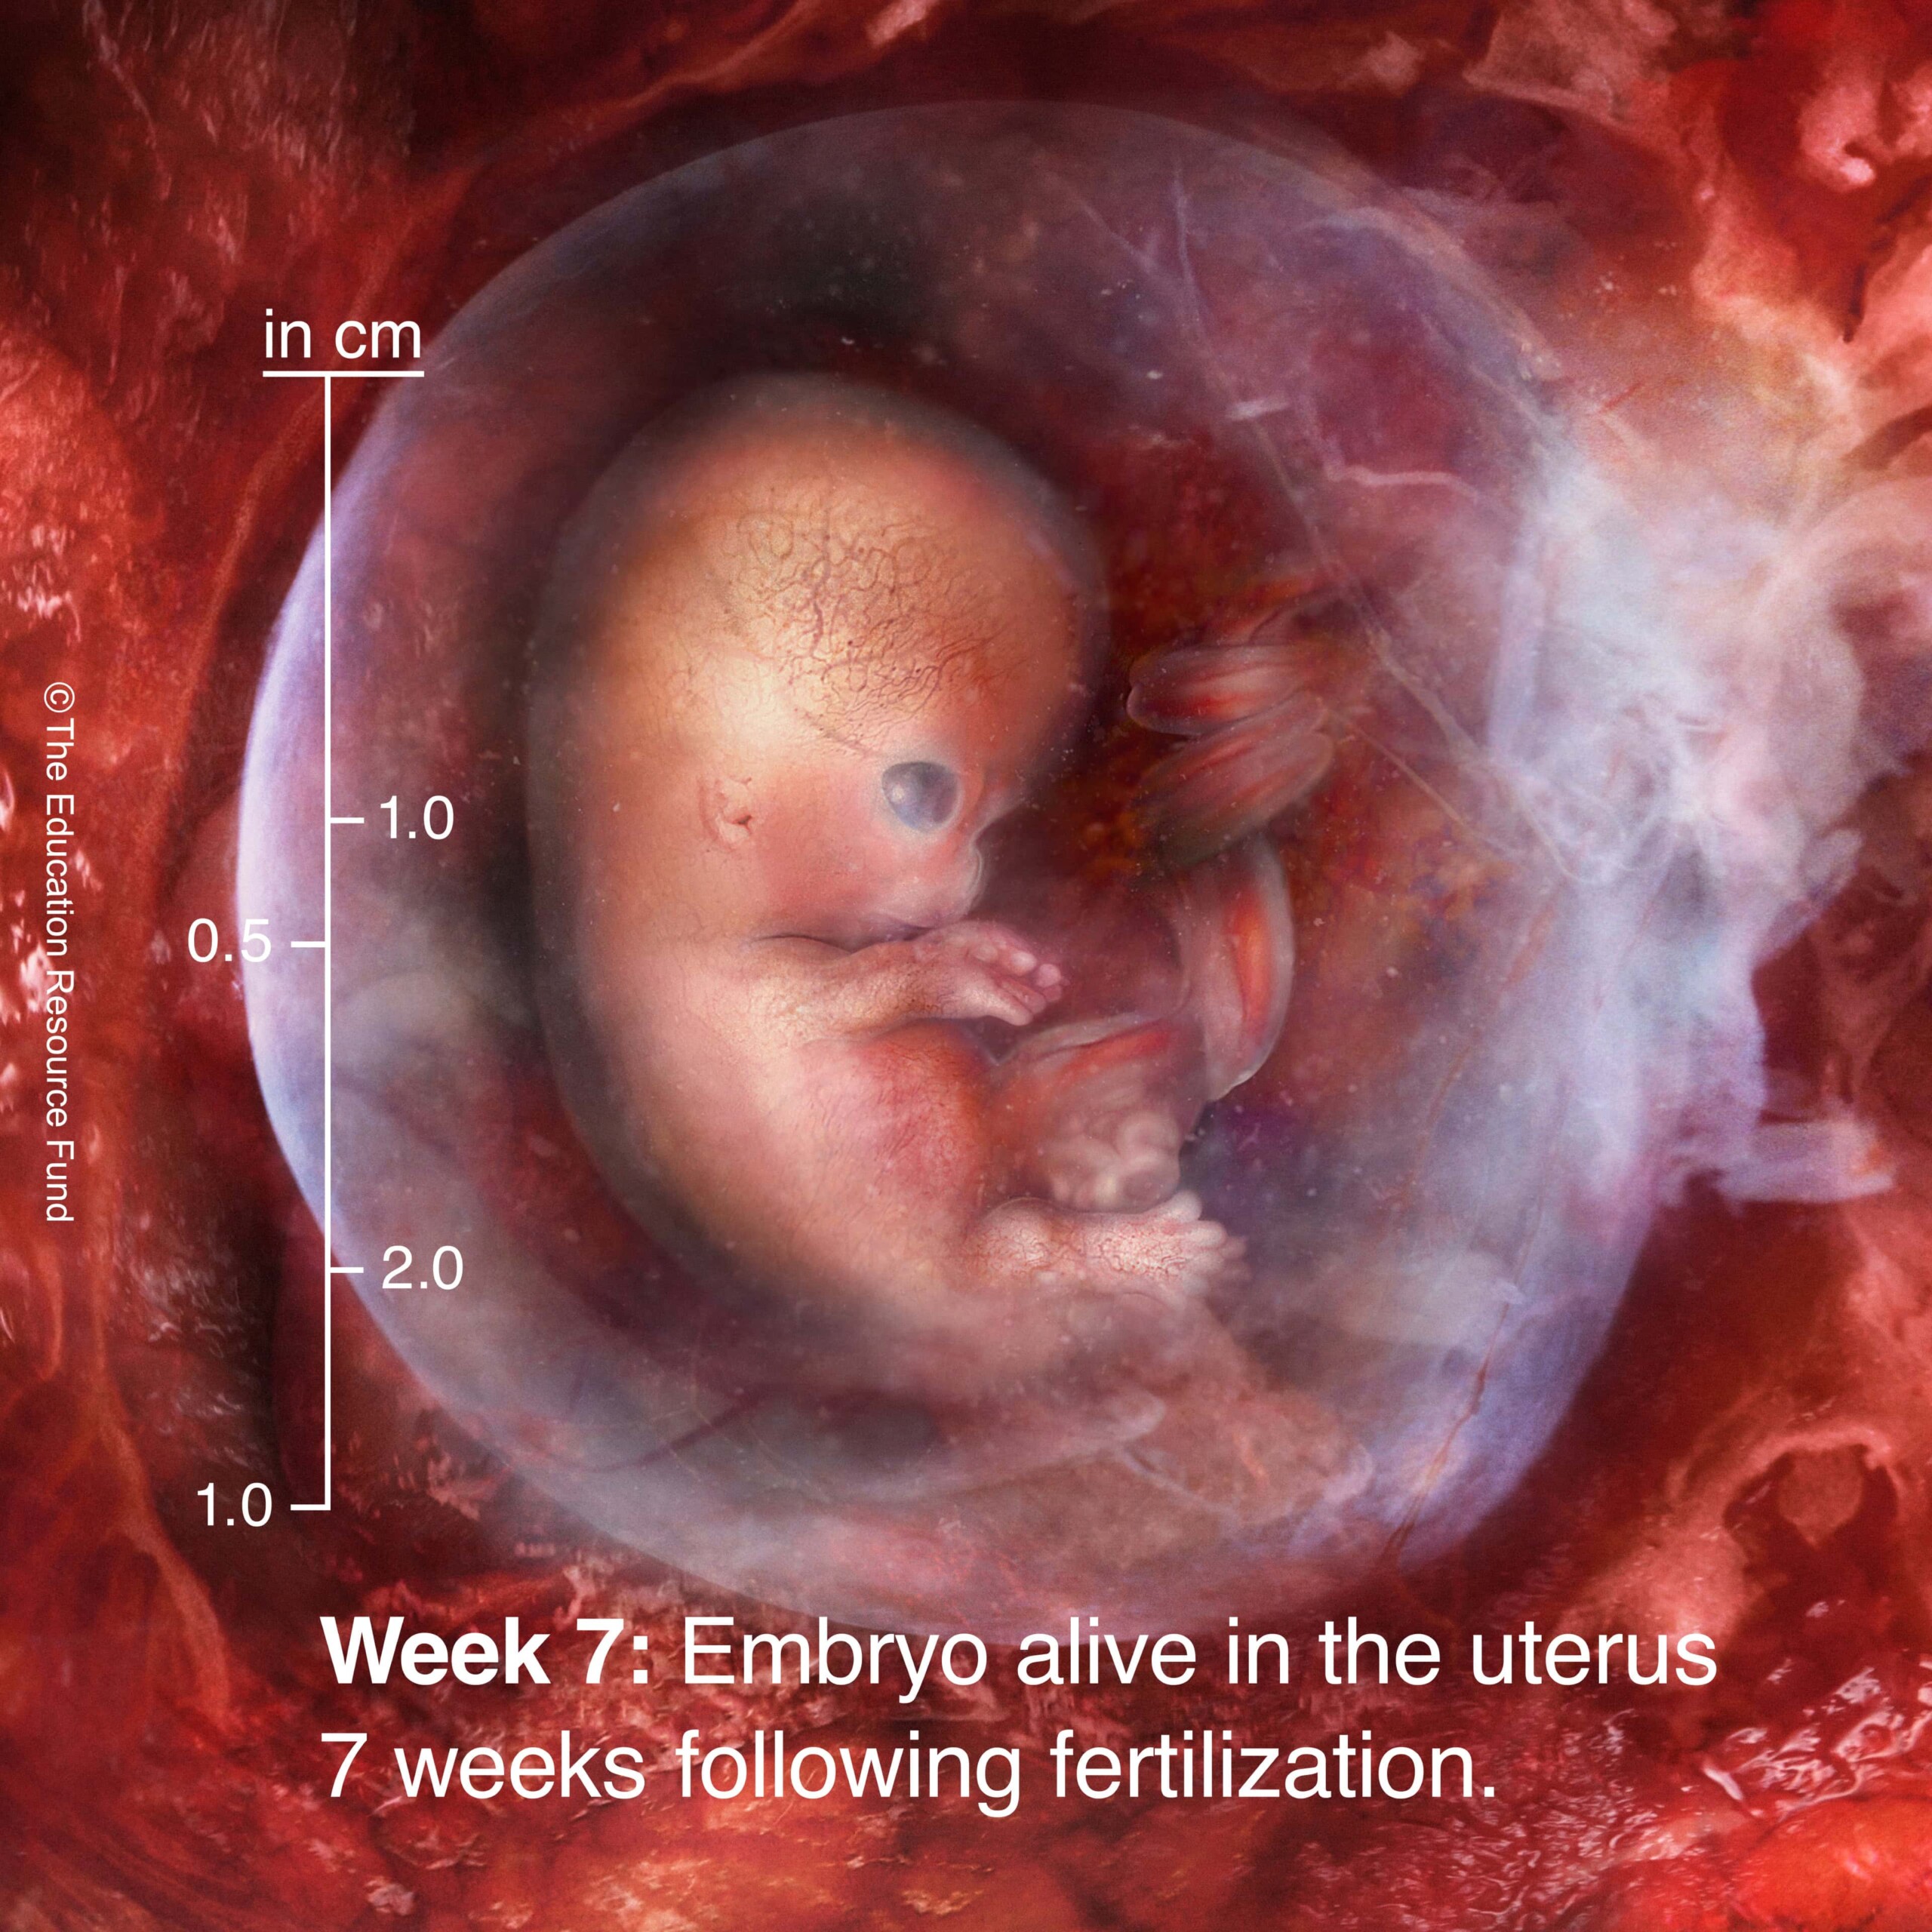 Week 7: Embryo alive in the uterus 7 weeks following fertilization